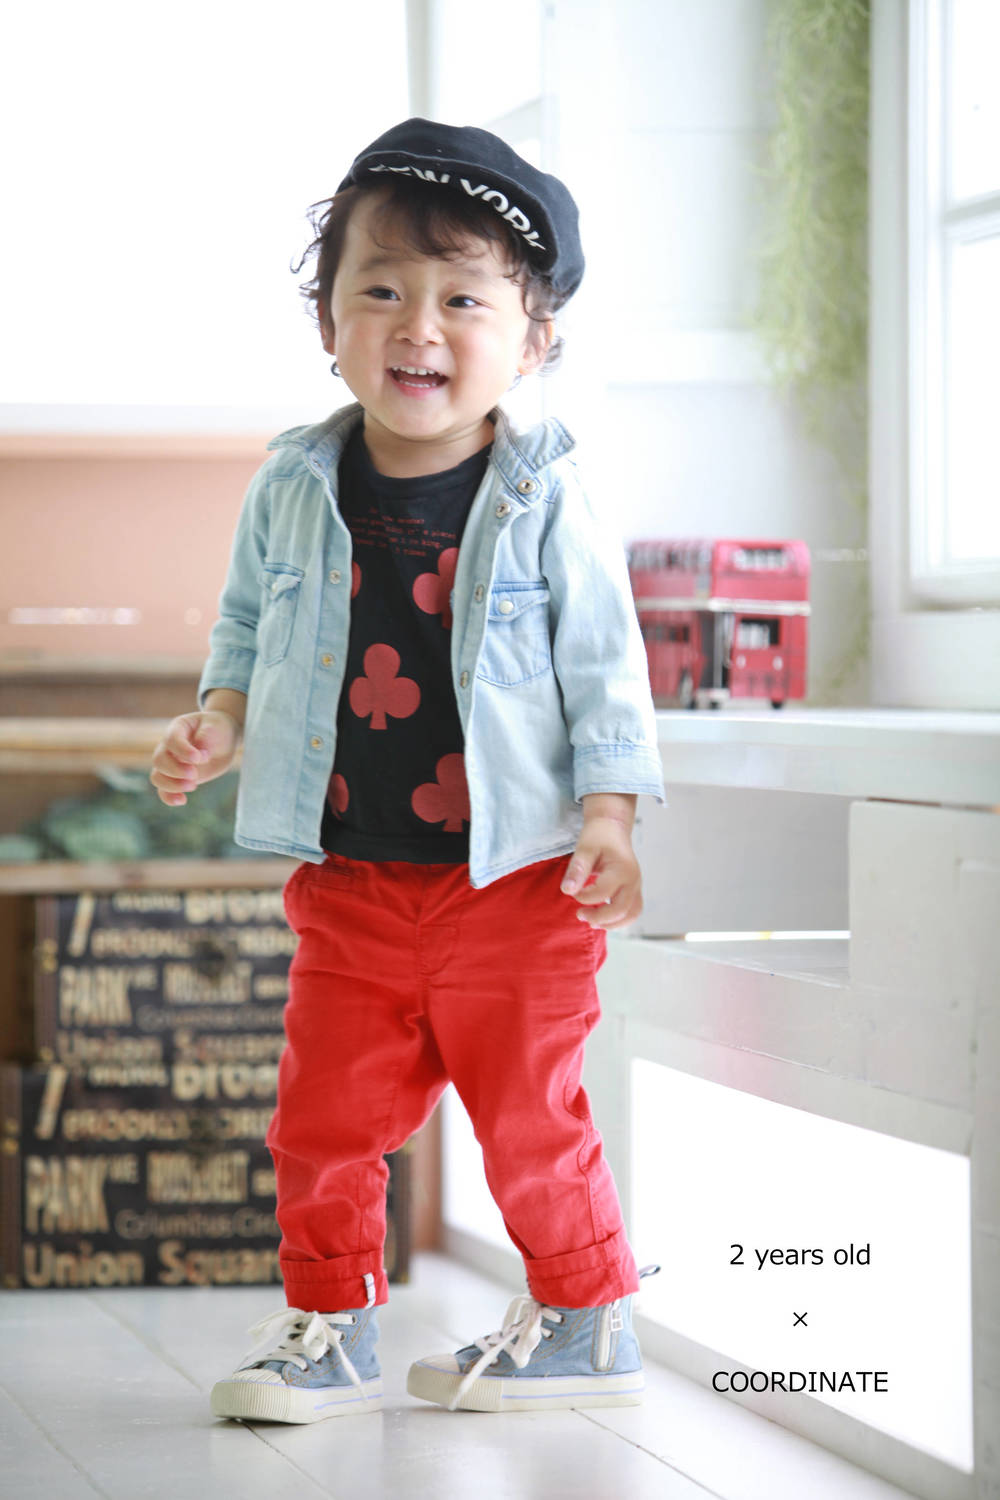 2歳 男の子 市川店 子供から家族まで自然でおしゃれに残す人生の写真館 ライフスタジオ